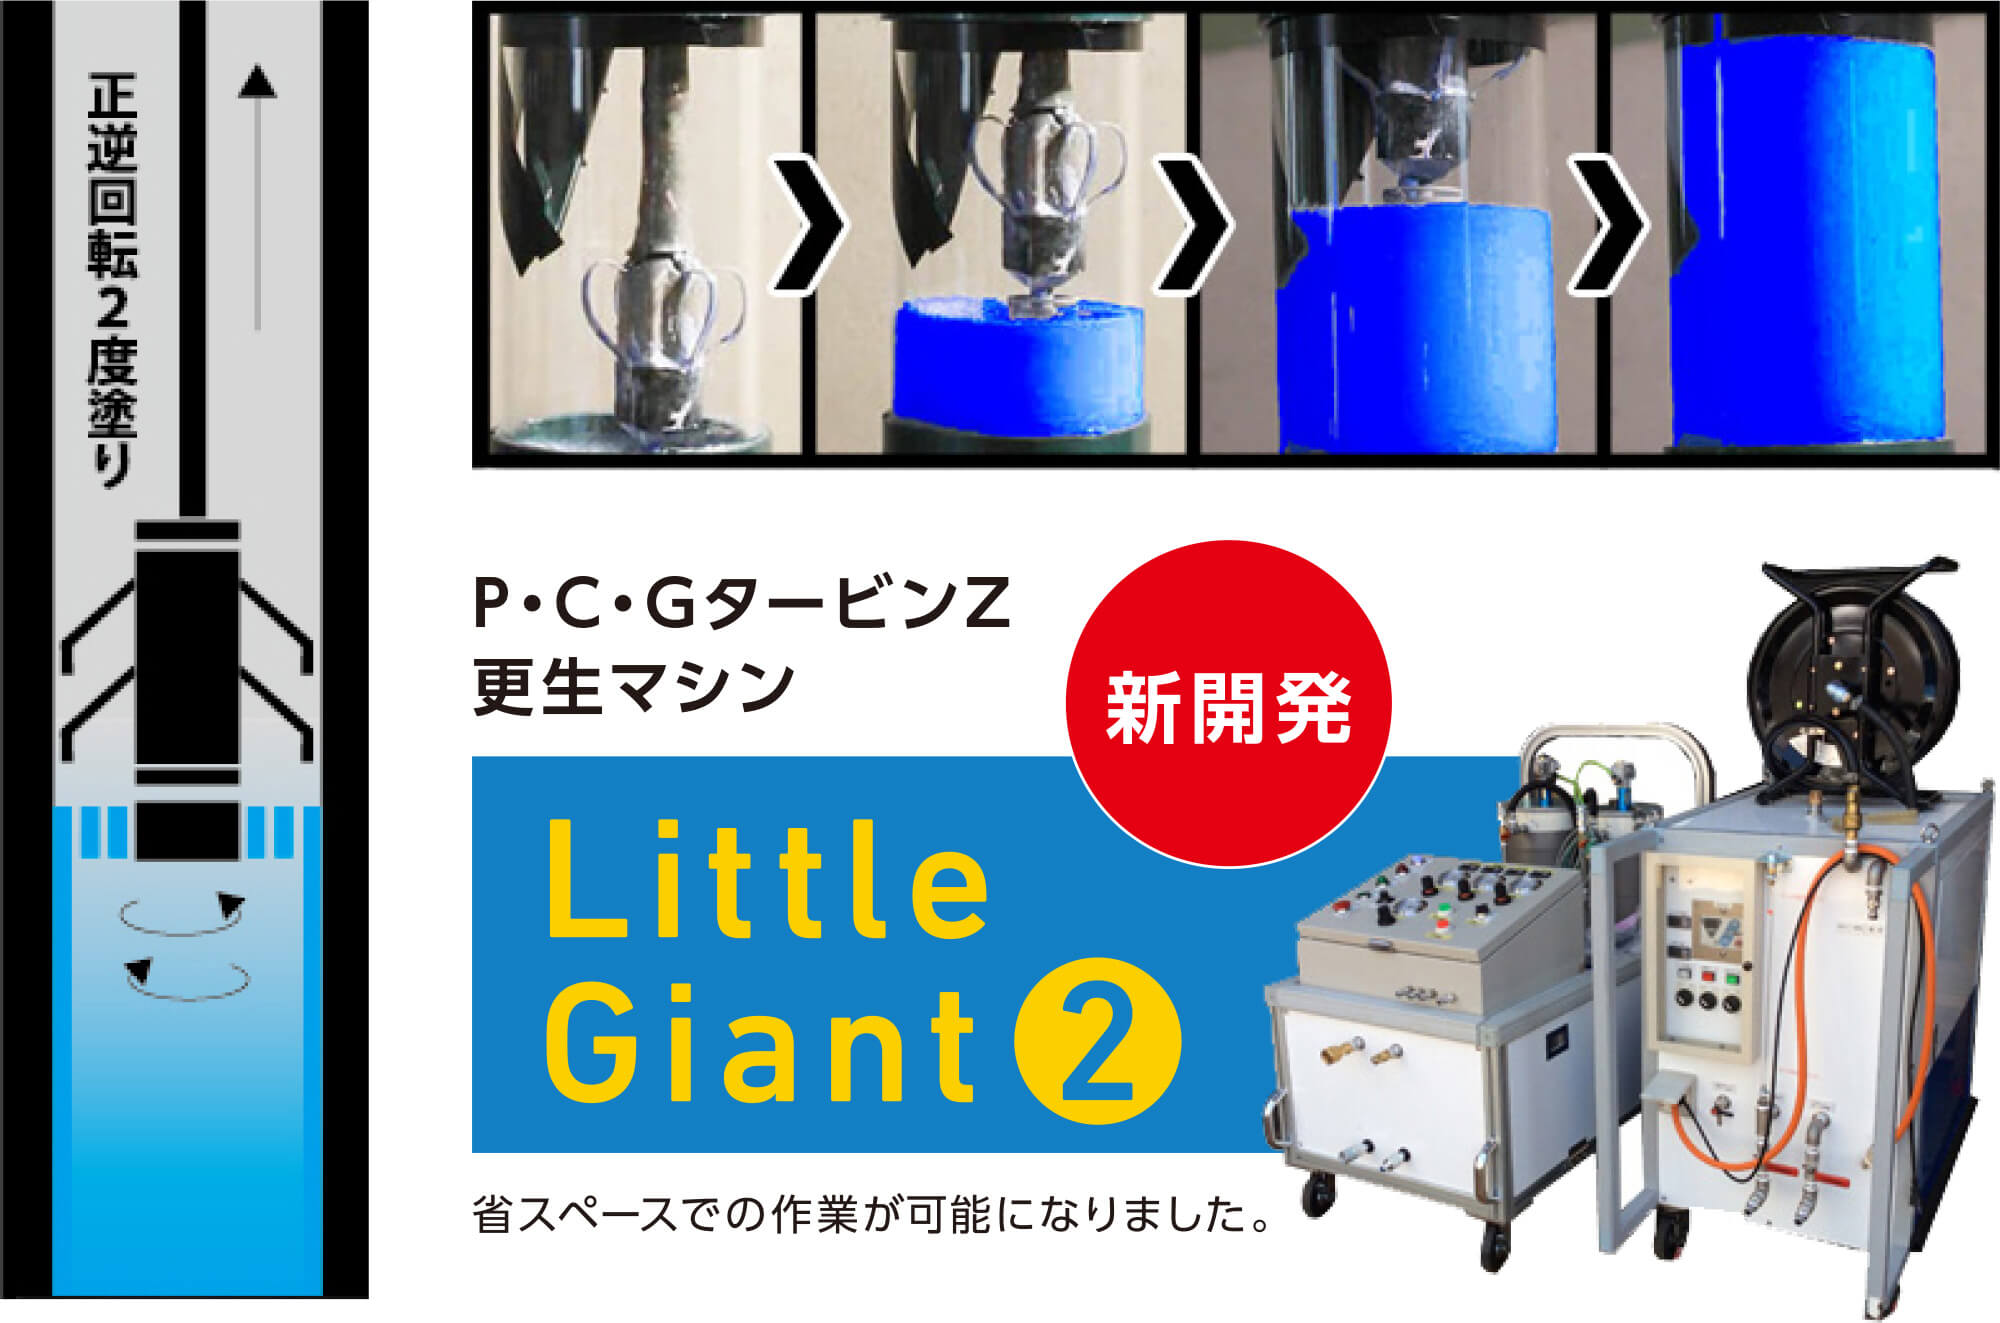 P・C・GタービンZ更生マシン「Little Giant2」